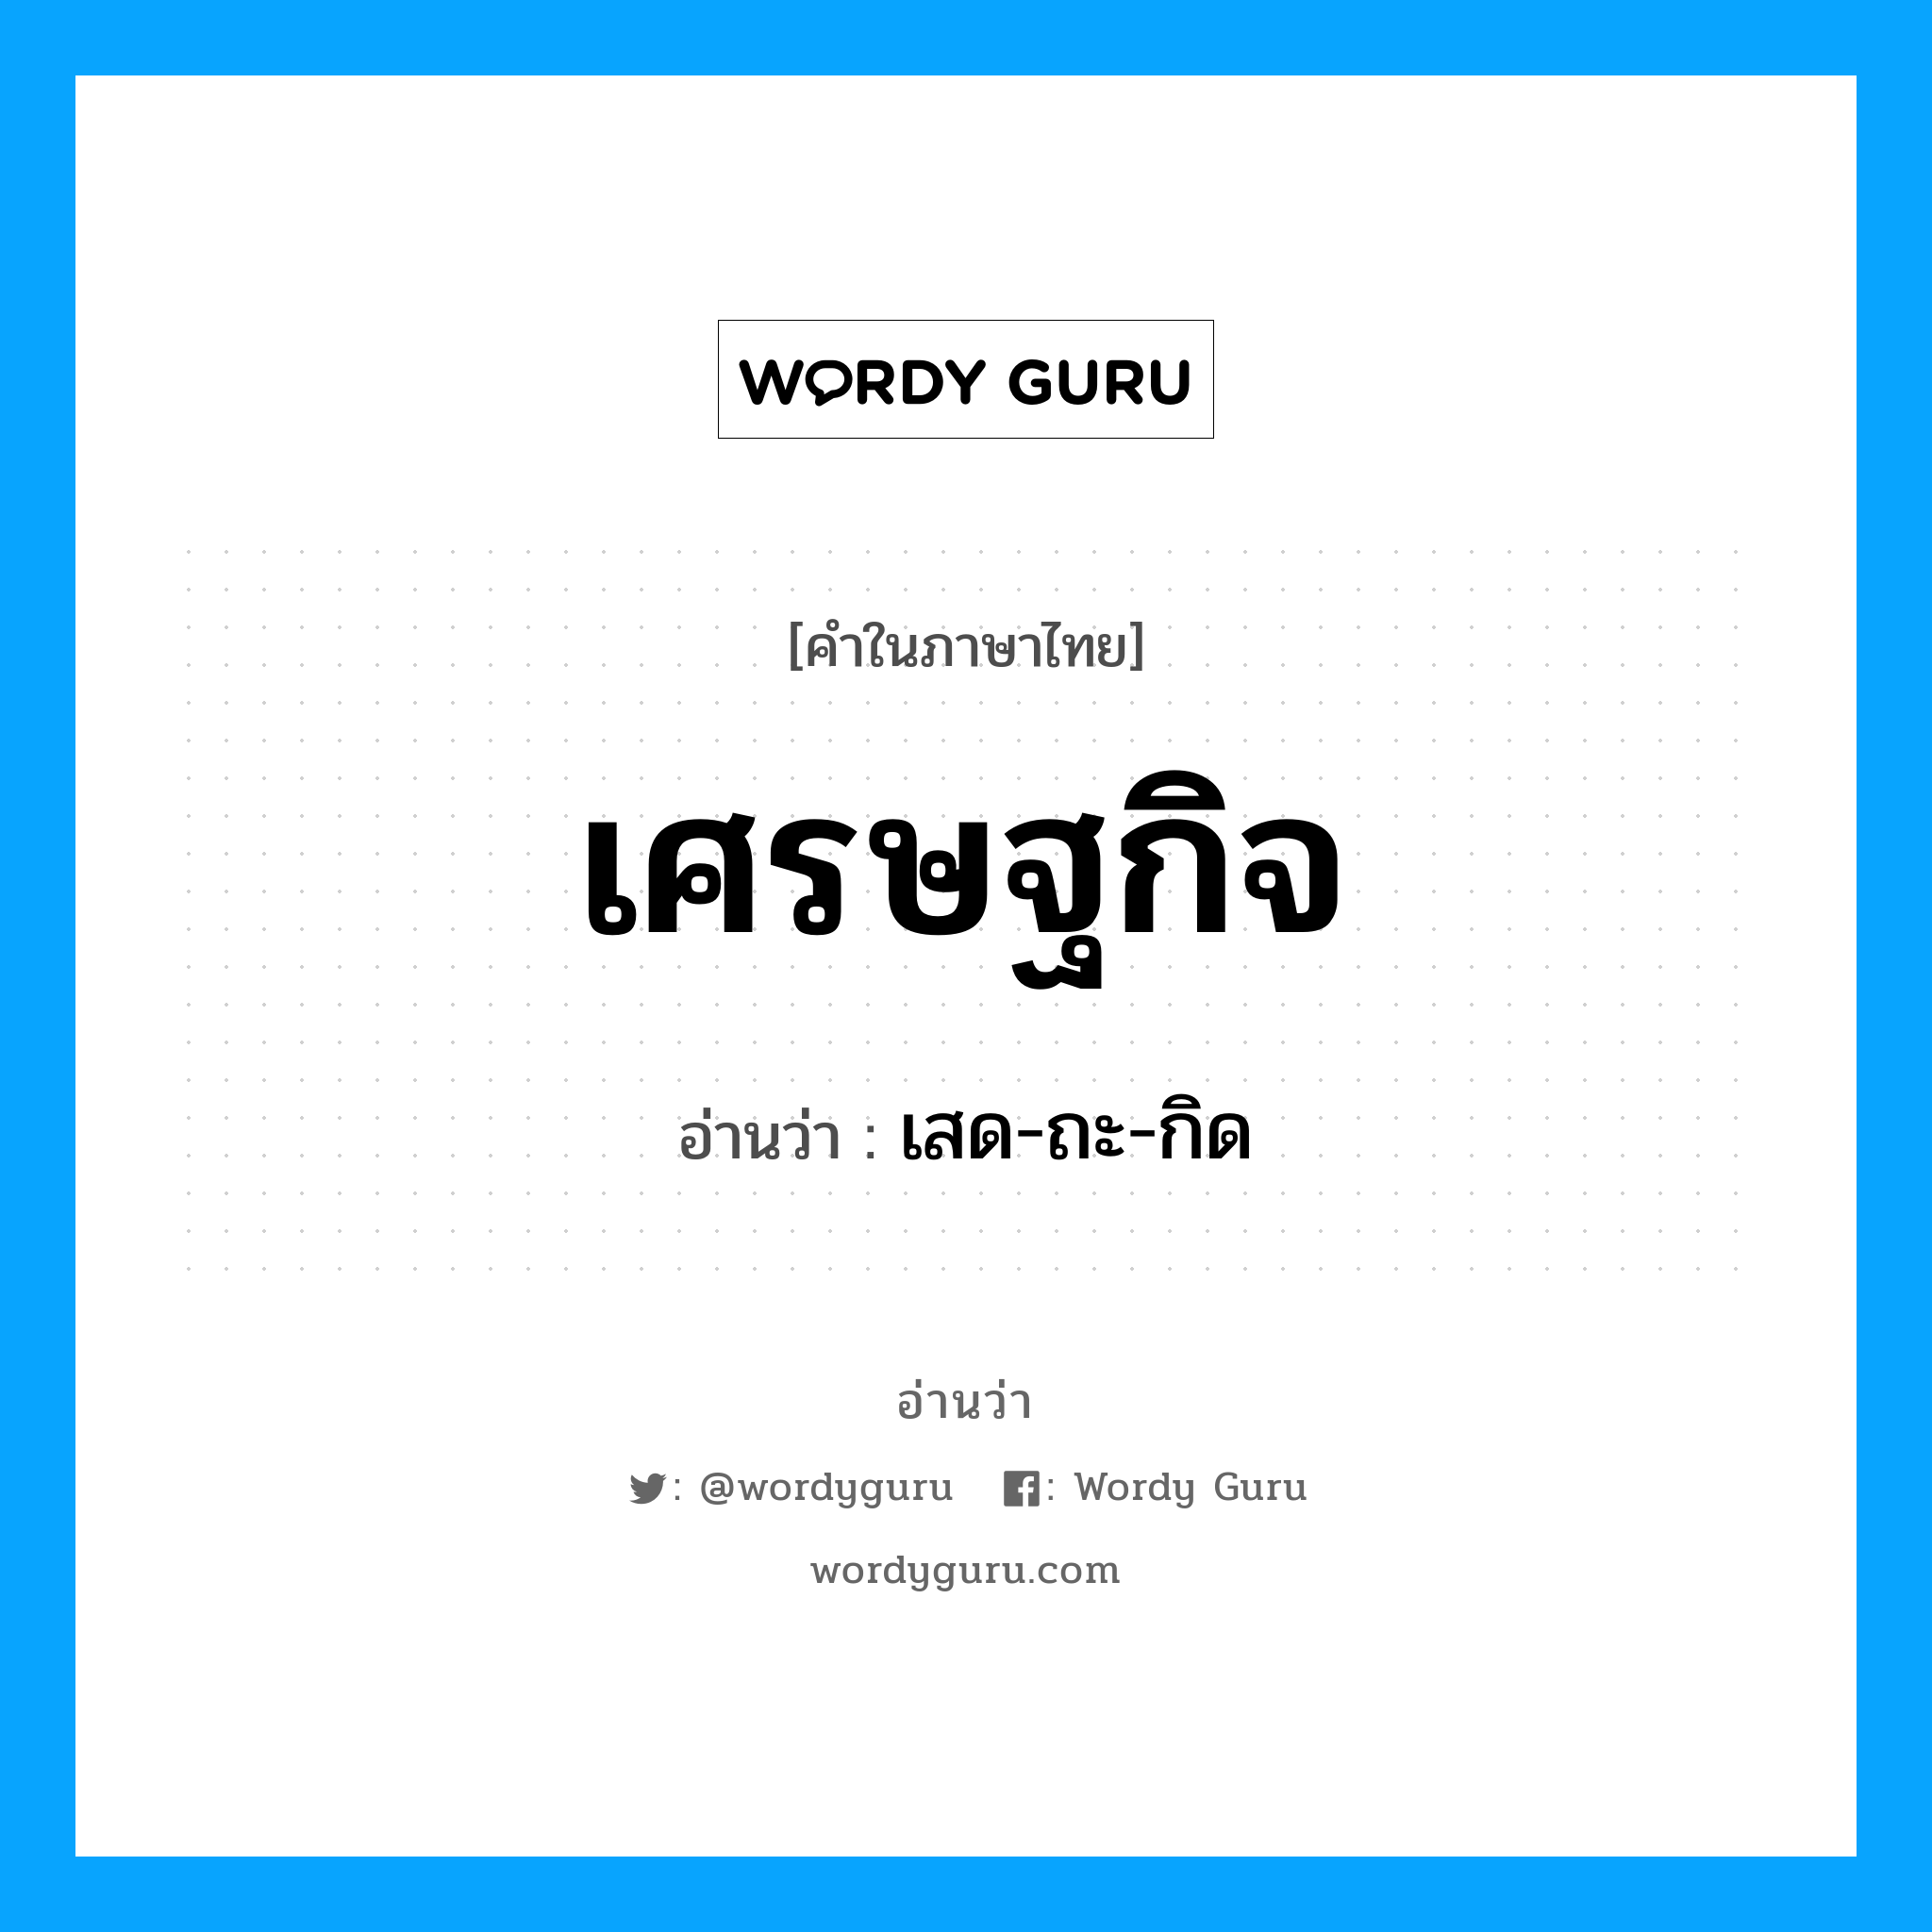 เสด-ถะ-กิด เป็นคำอ่านของคำไหน?, คำในภาษาไทย เสด-ถะ-กิด อ่านว่า เศรษฐกิจ